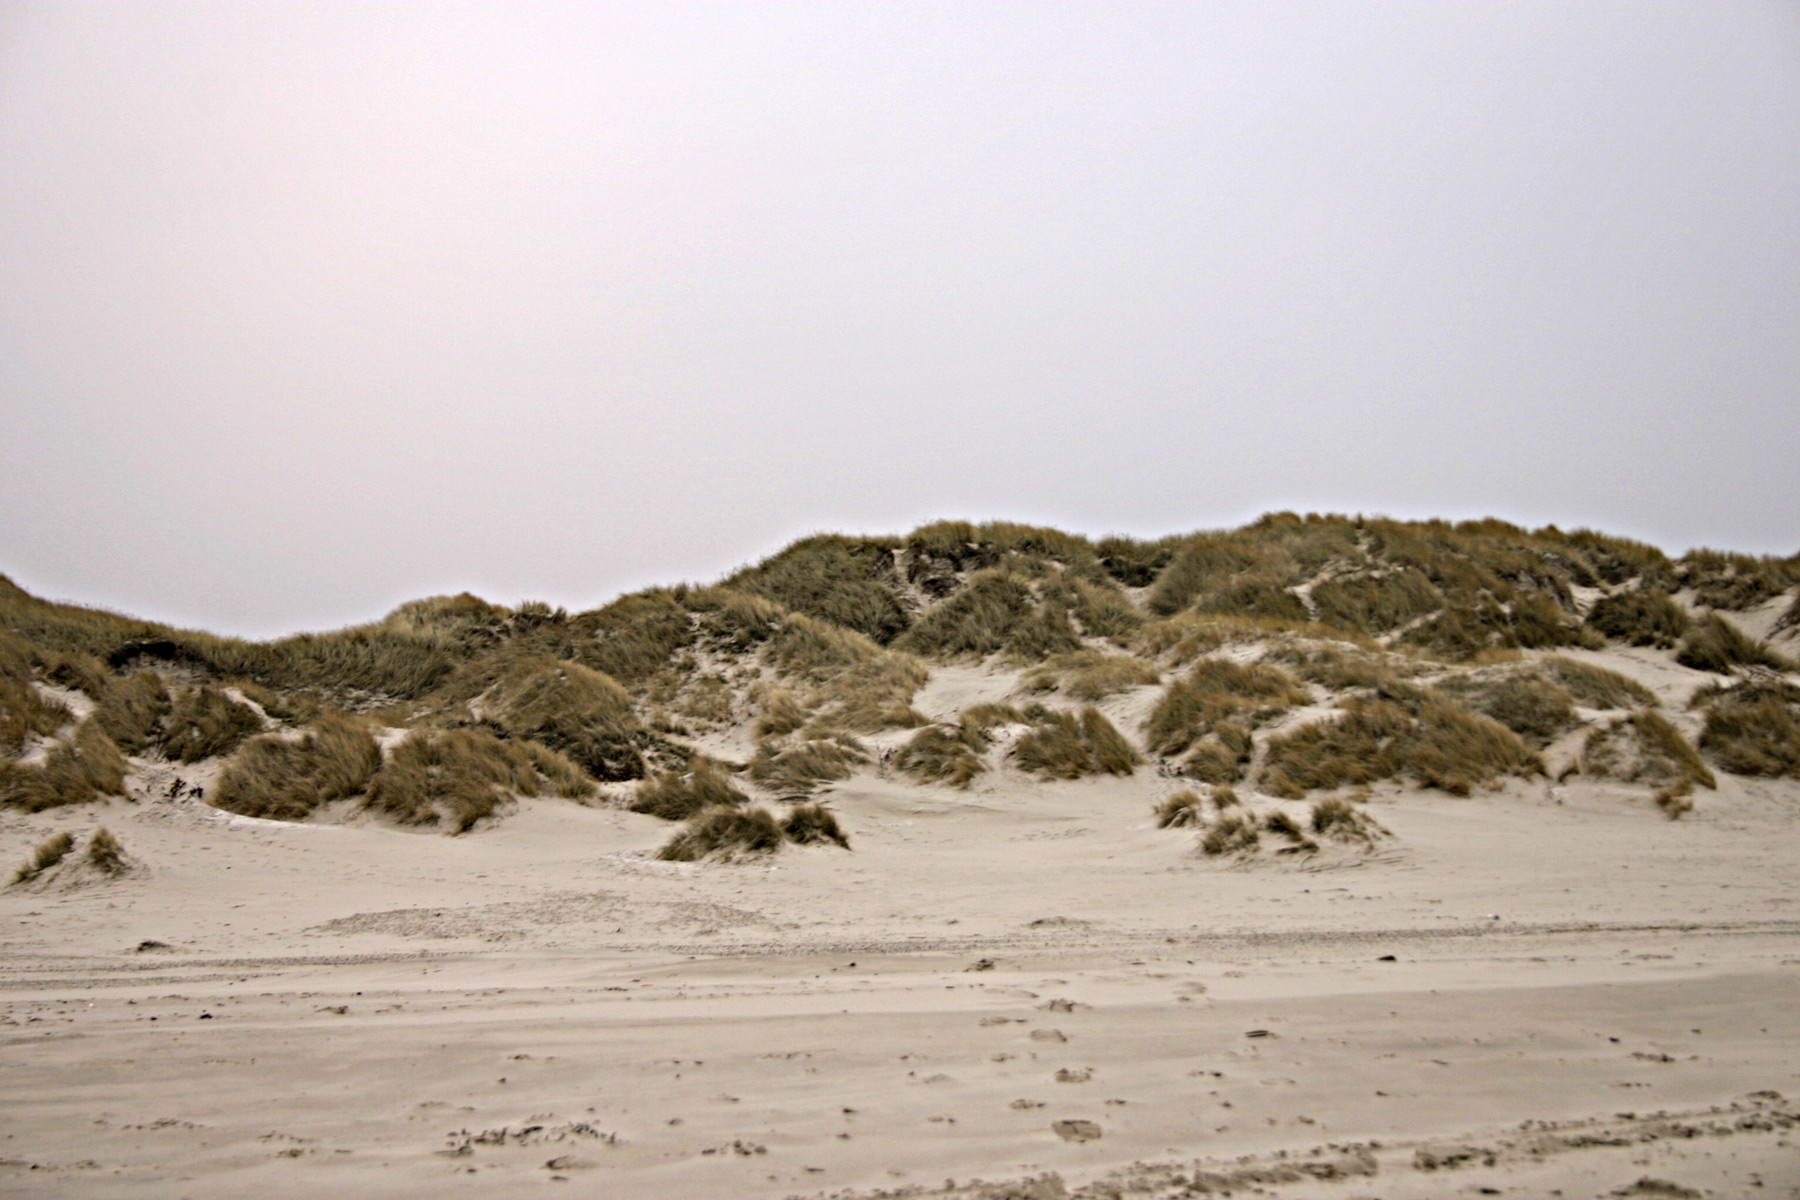 Sand dunes, Beach, Dune, Sand, Straws, HQ Photo